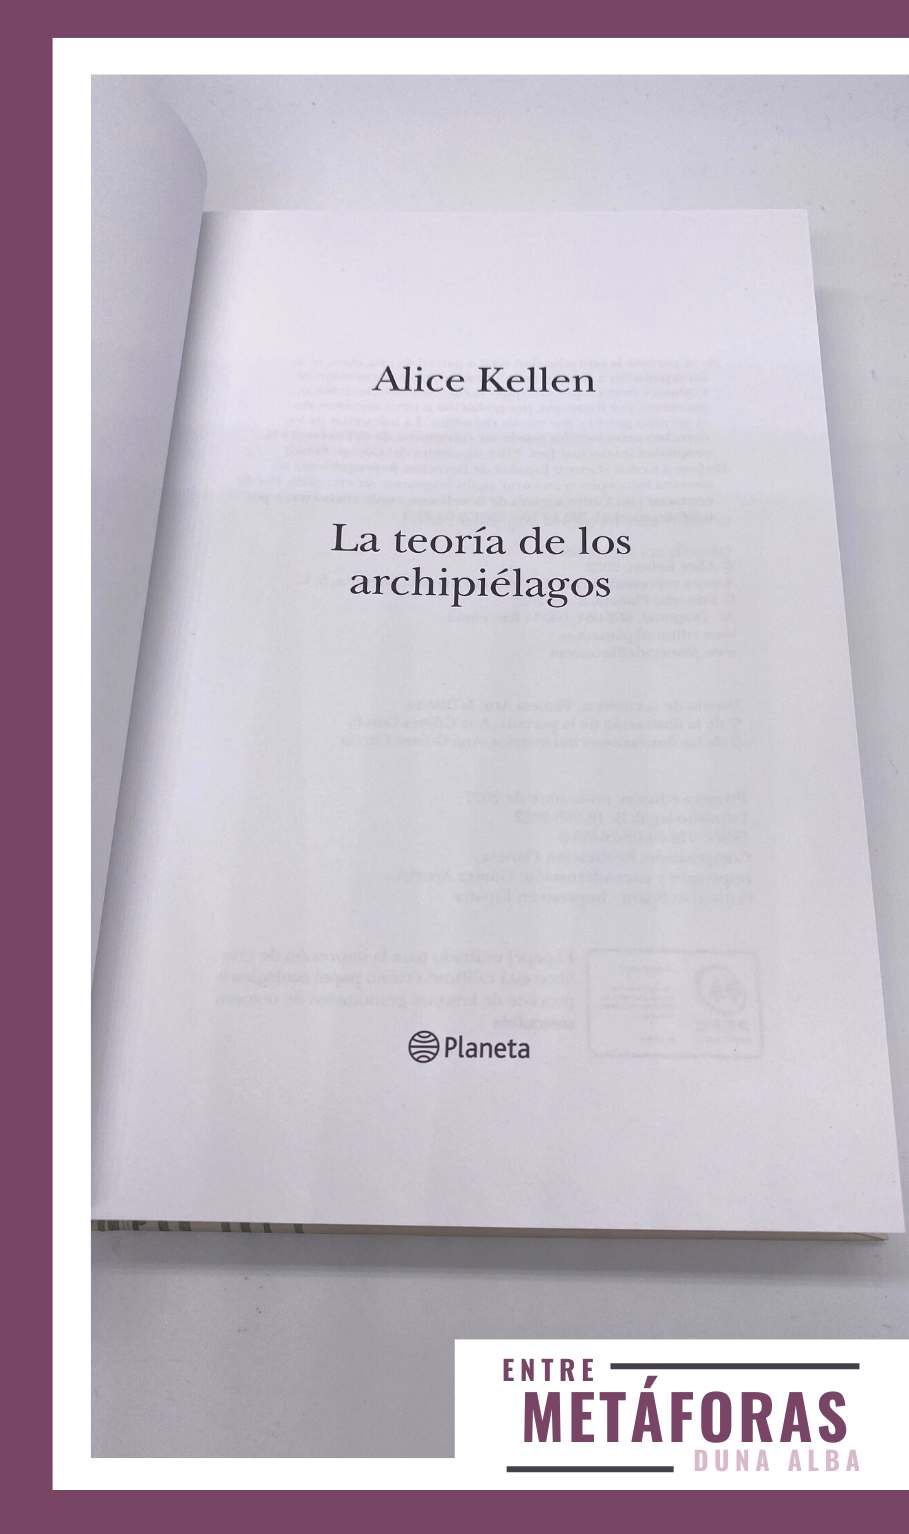 La teoría de los archipiélagos, de Alice Kellen